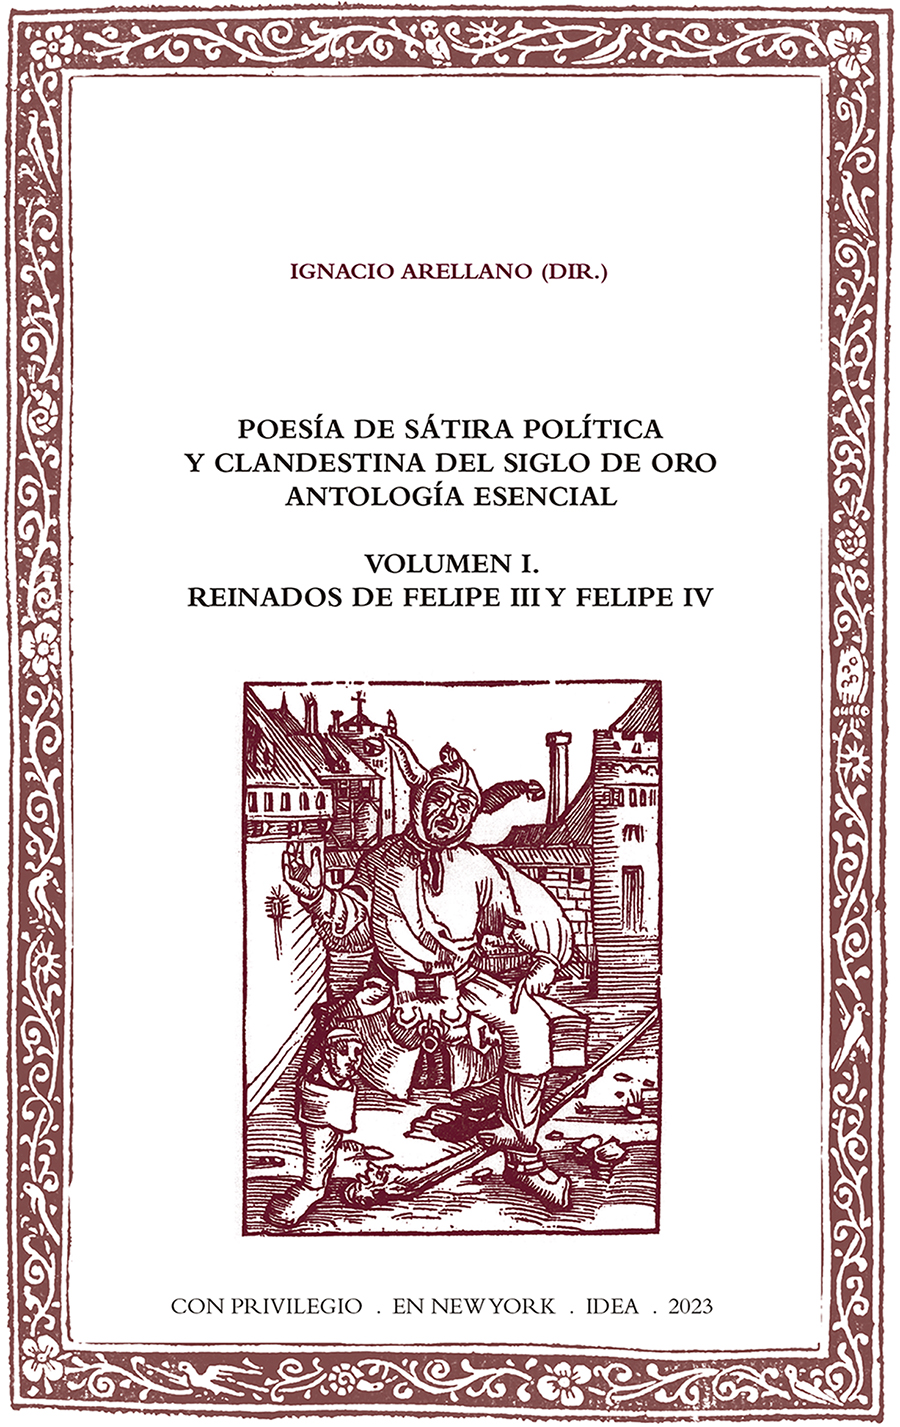 Poesía de sátira política y clandestina del Siglo de Oro. Antología esencial. Volumen I. Reinados de Felipe III y Felipe IV